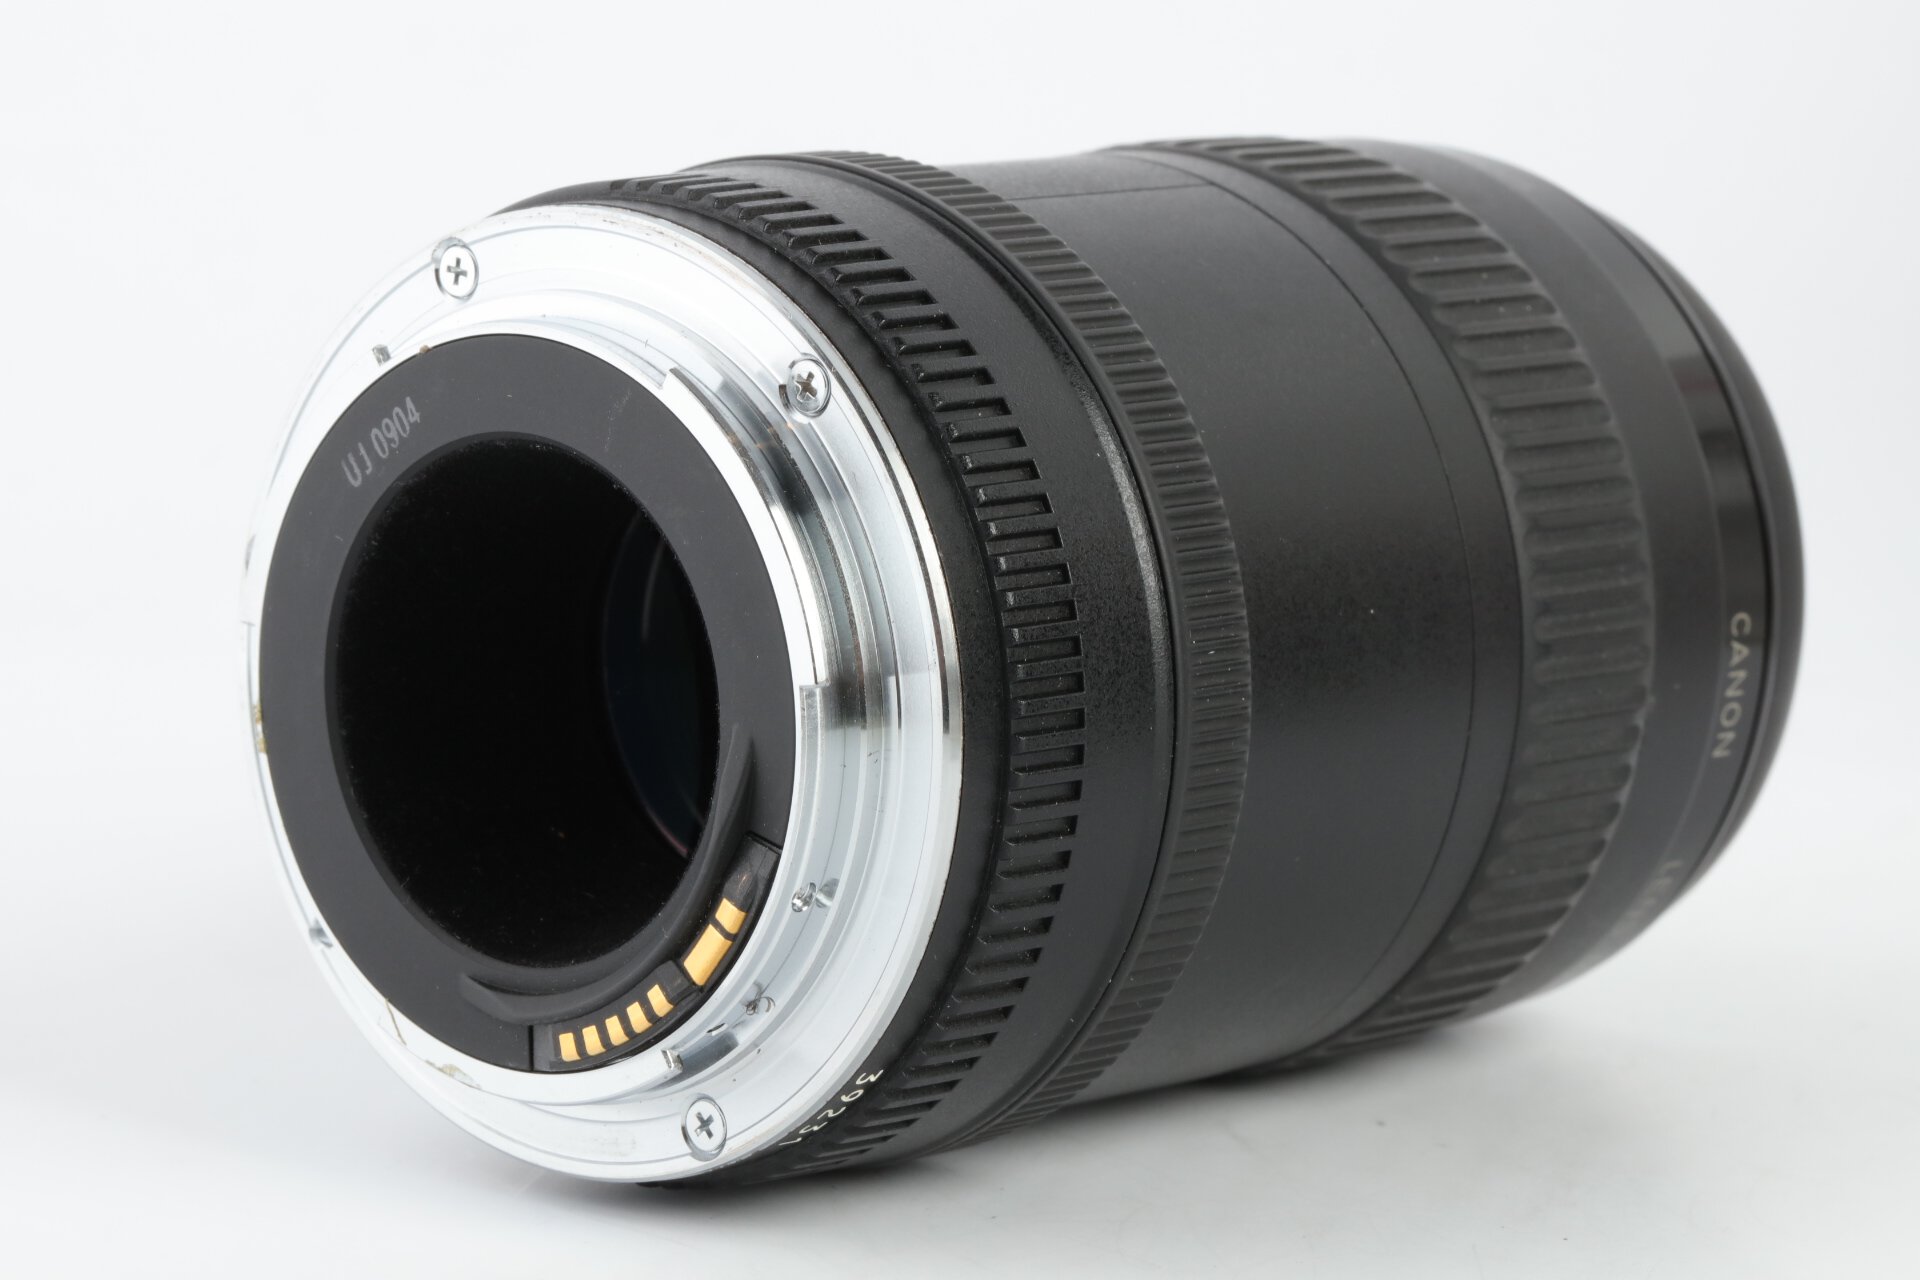 Canon EF Softfokus 135mm 2,8